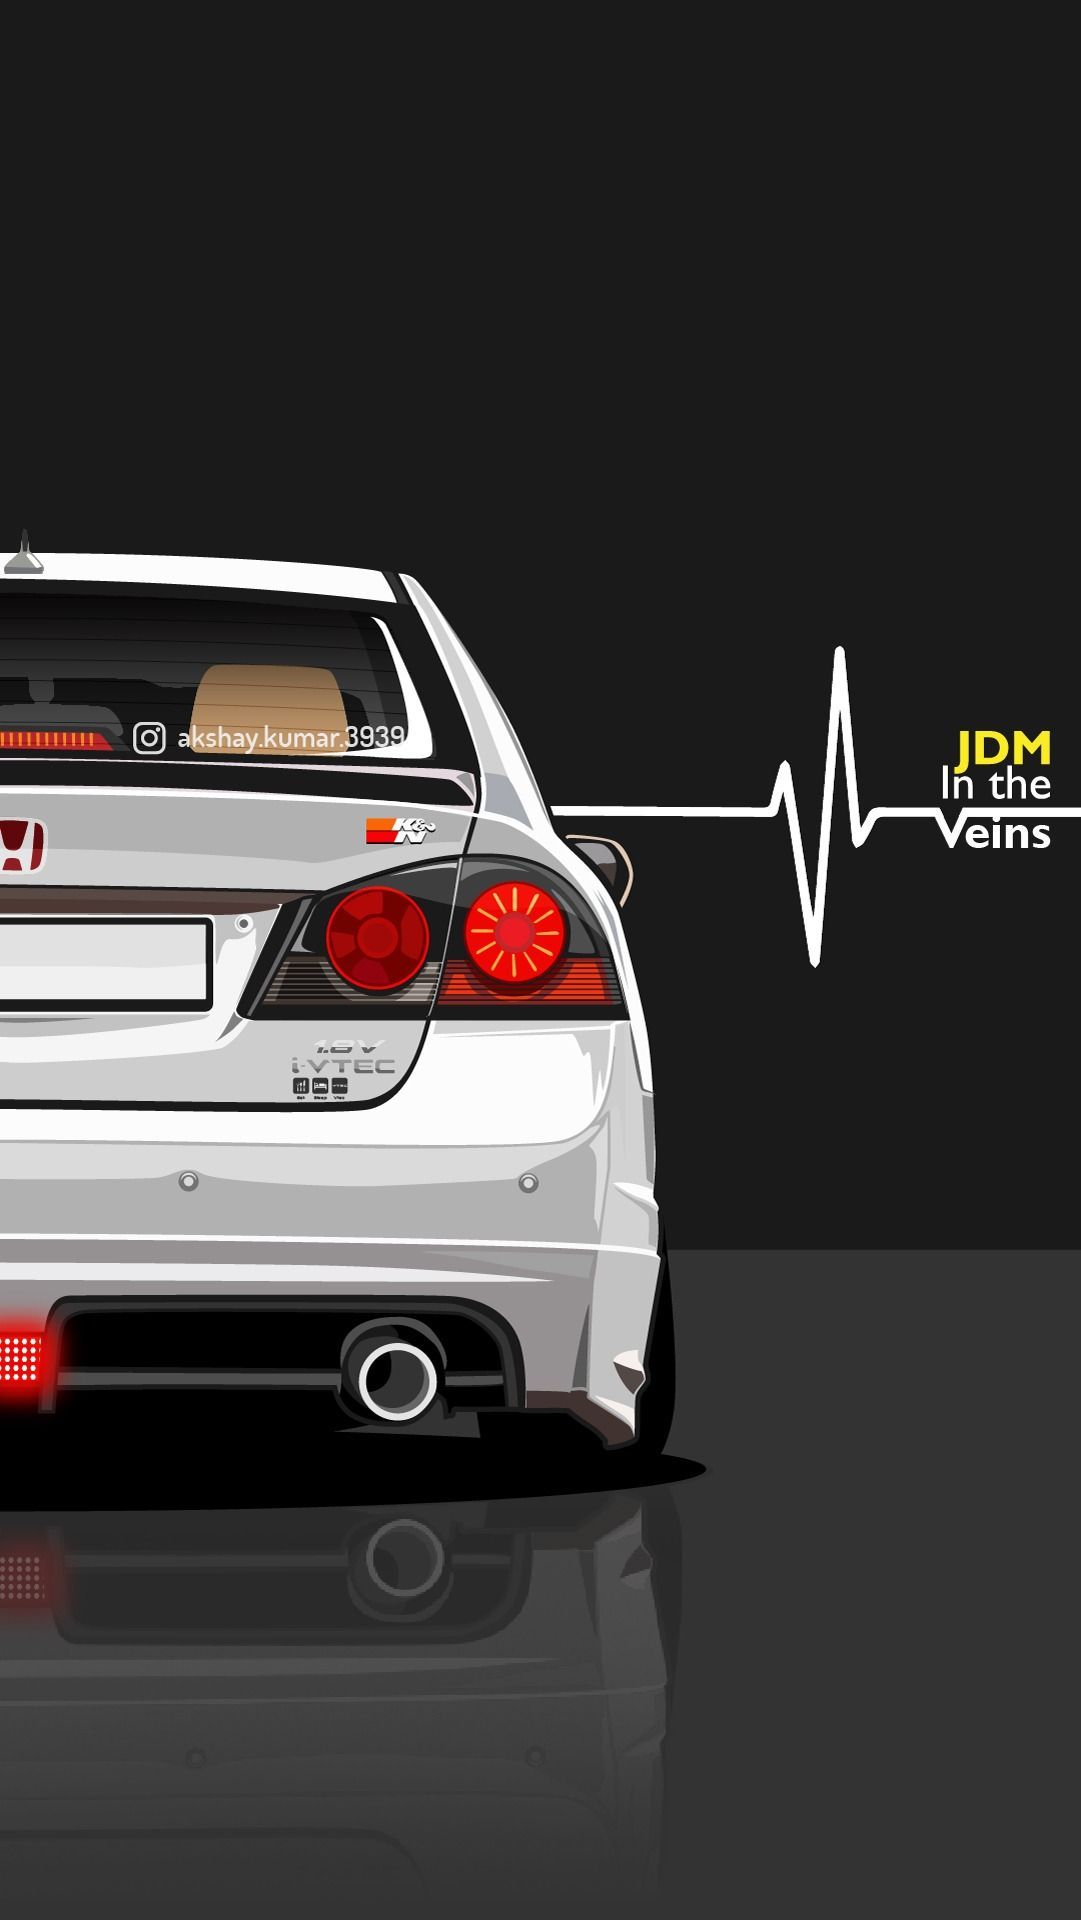 Honda Civic Wallpaper. Indian Cars Wallpaper. Civic FD2. JDM Wallpaper. Phone Wallpaper. Honda civic, Honda, Jdm